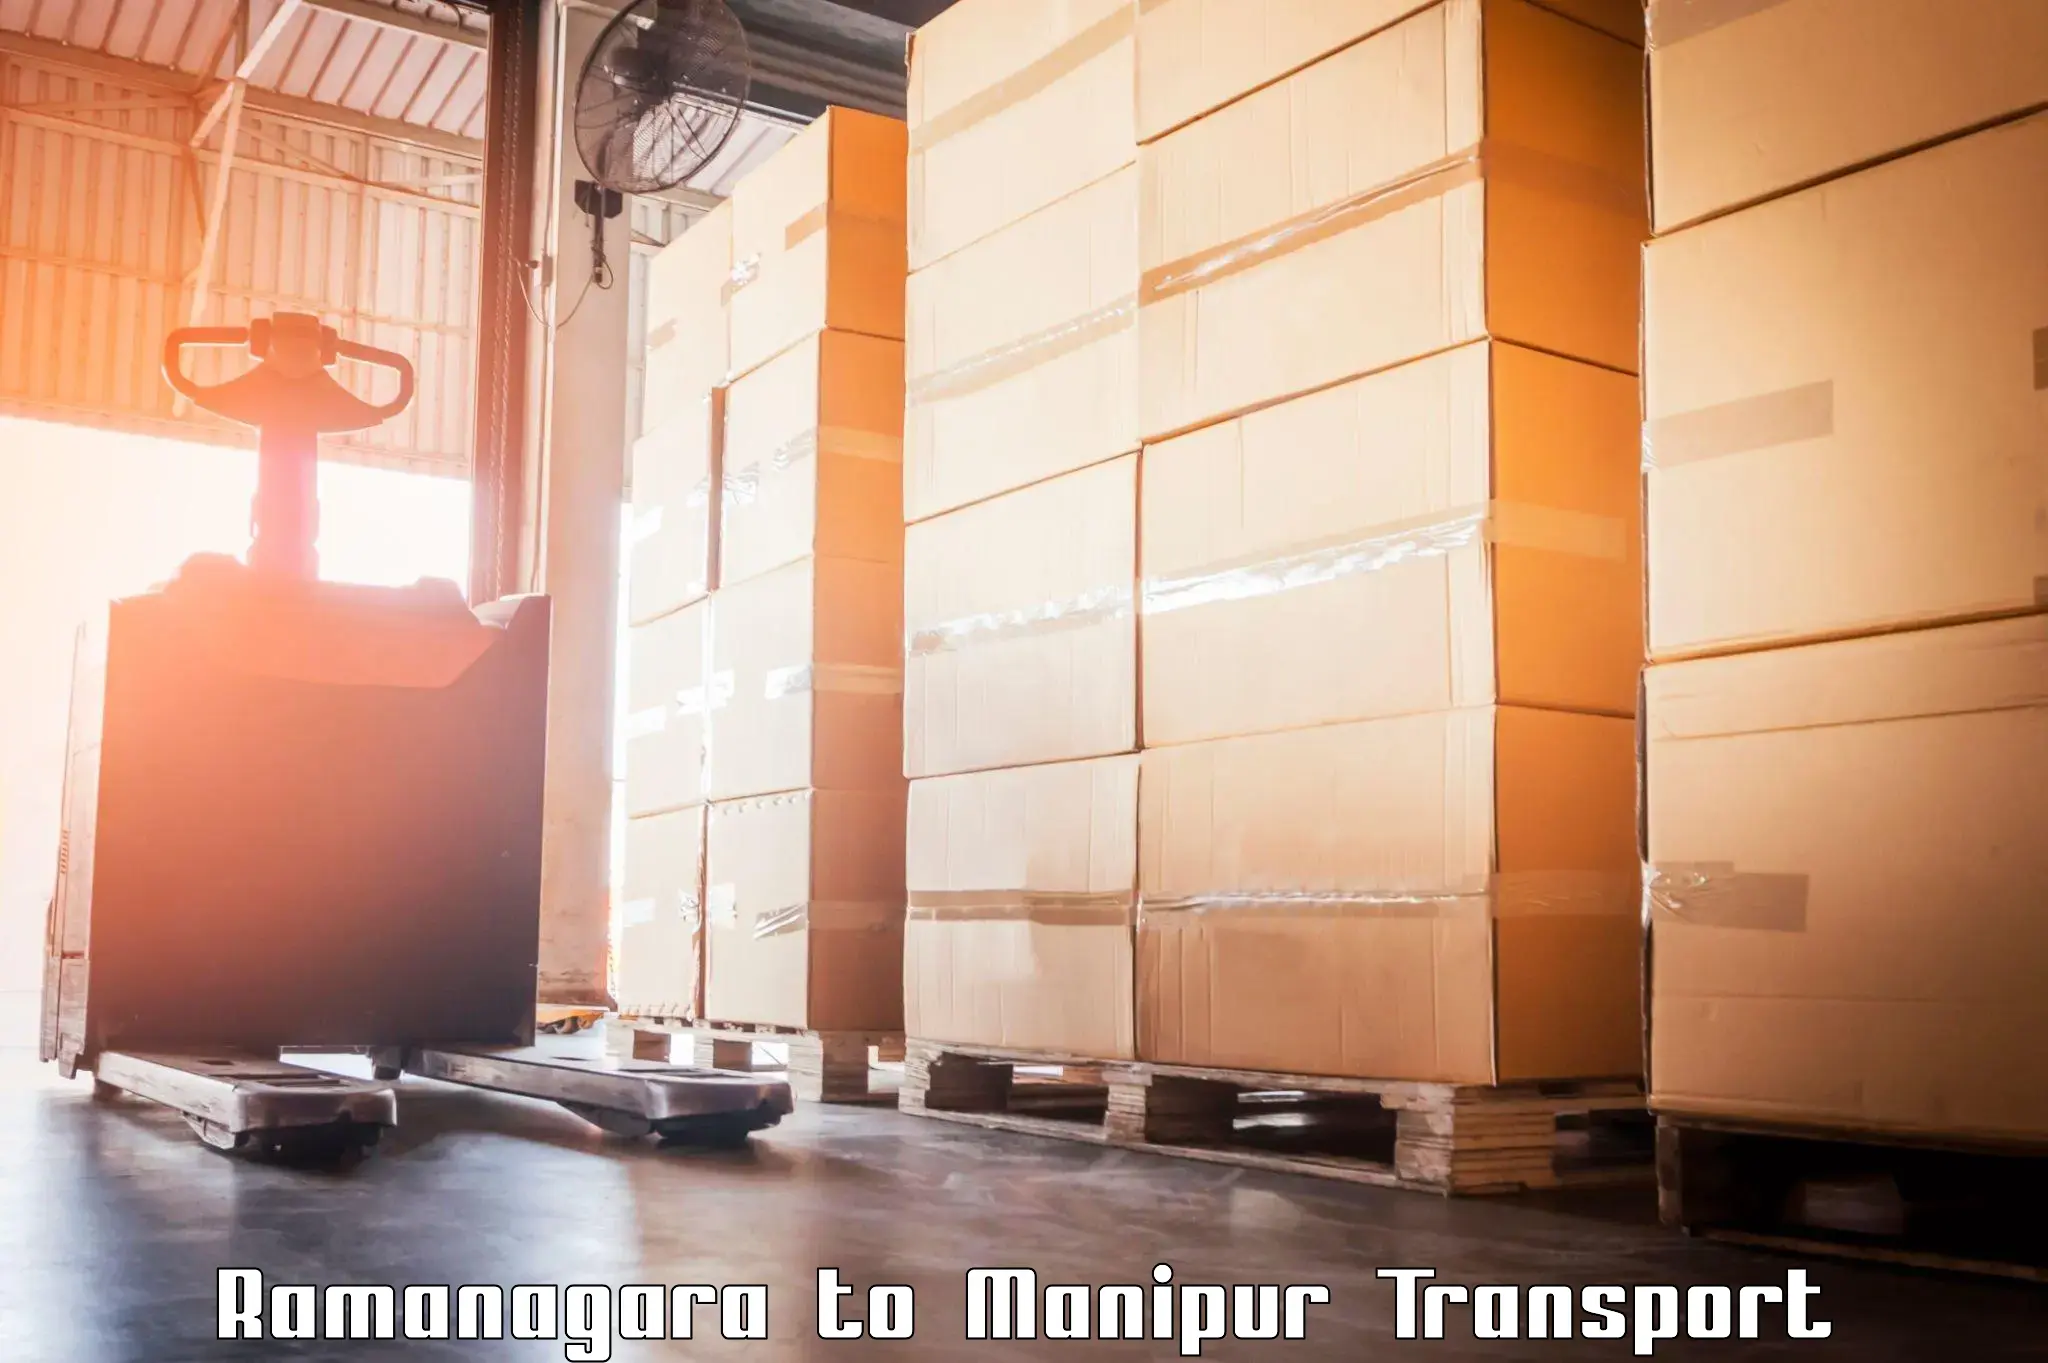 International cargo transportation services in Ramanagara to Moirang